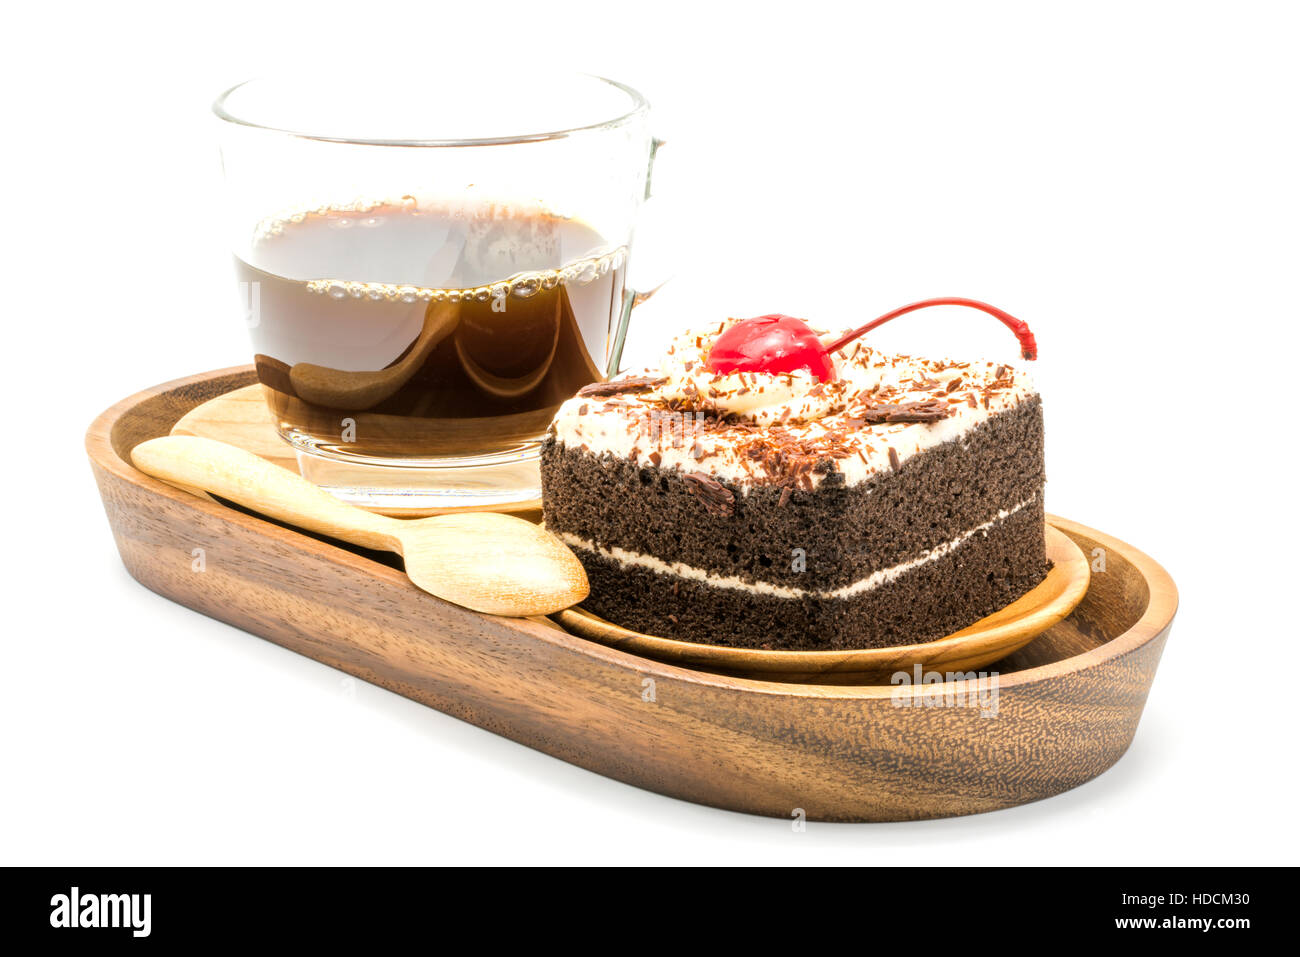 Torta al cioccolato e una tazza di caffè in un vassoio di legno su sfondo bianco Foto Stock